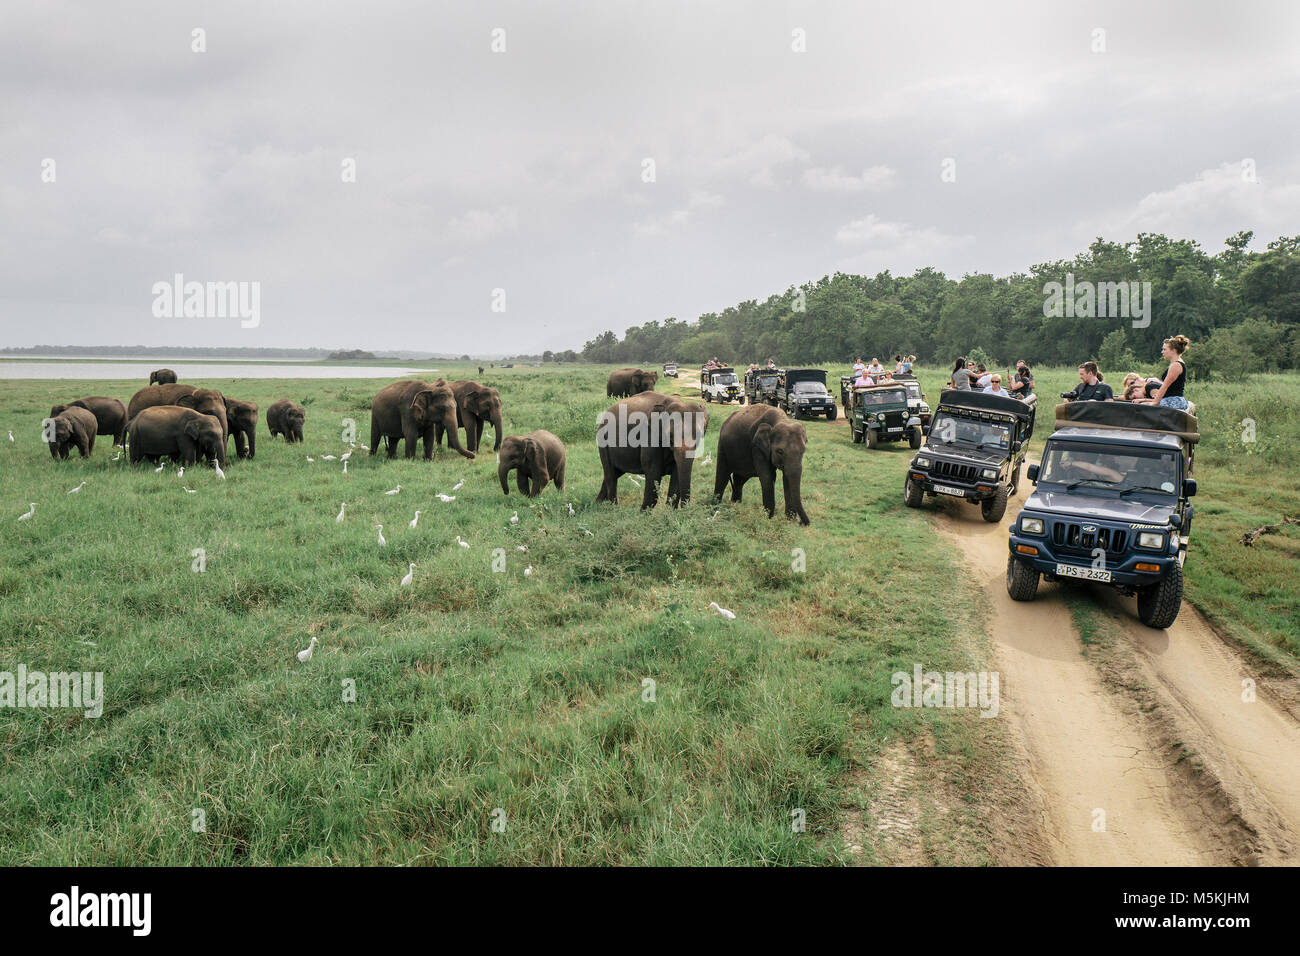 Recueillir des éléphants sauvages dans le Parc National Minneriya, Sri Lanka. Le parc est pensé pour contenir près de 200 éléphants sauvages. Banque D'Images